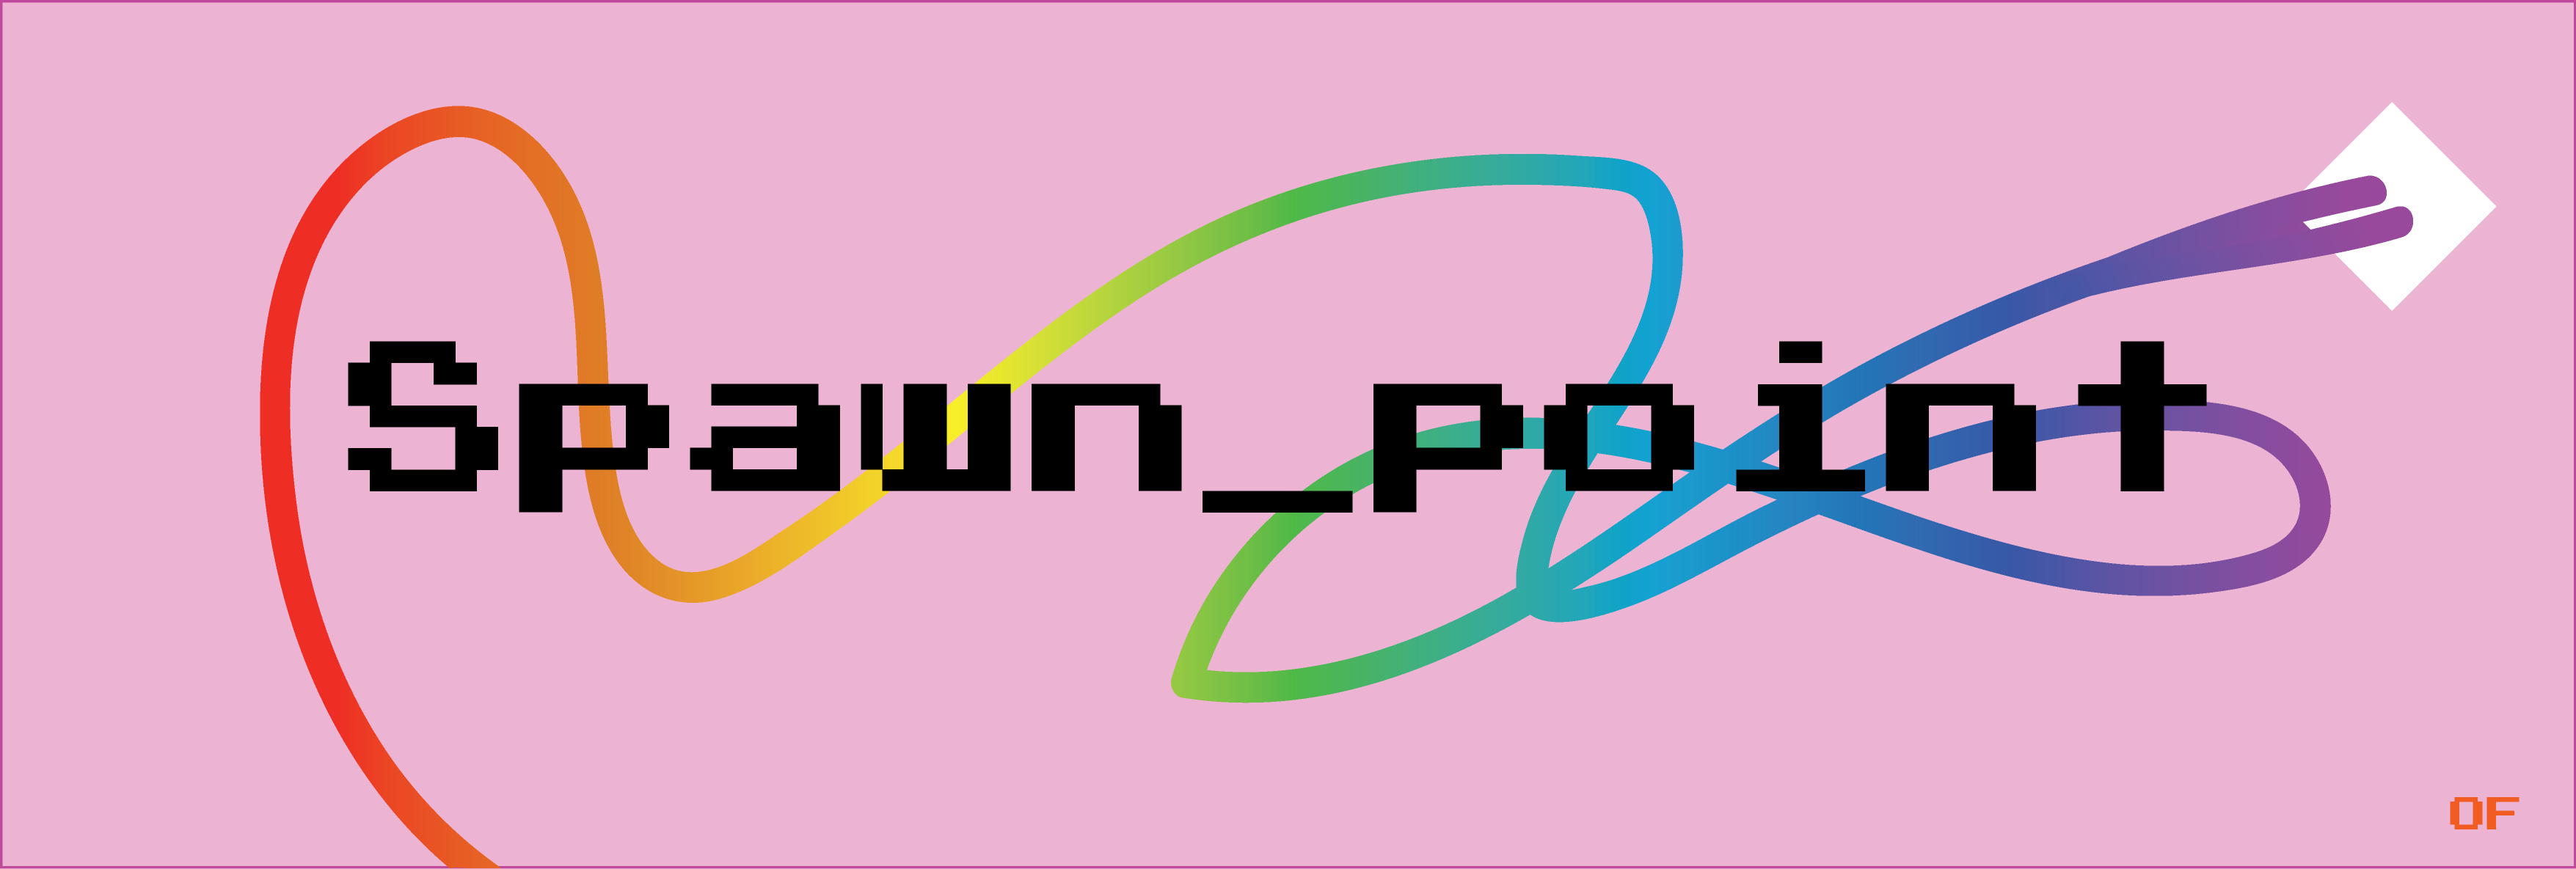 Spawn_point